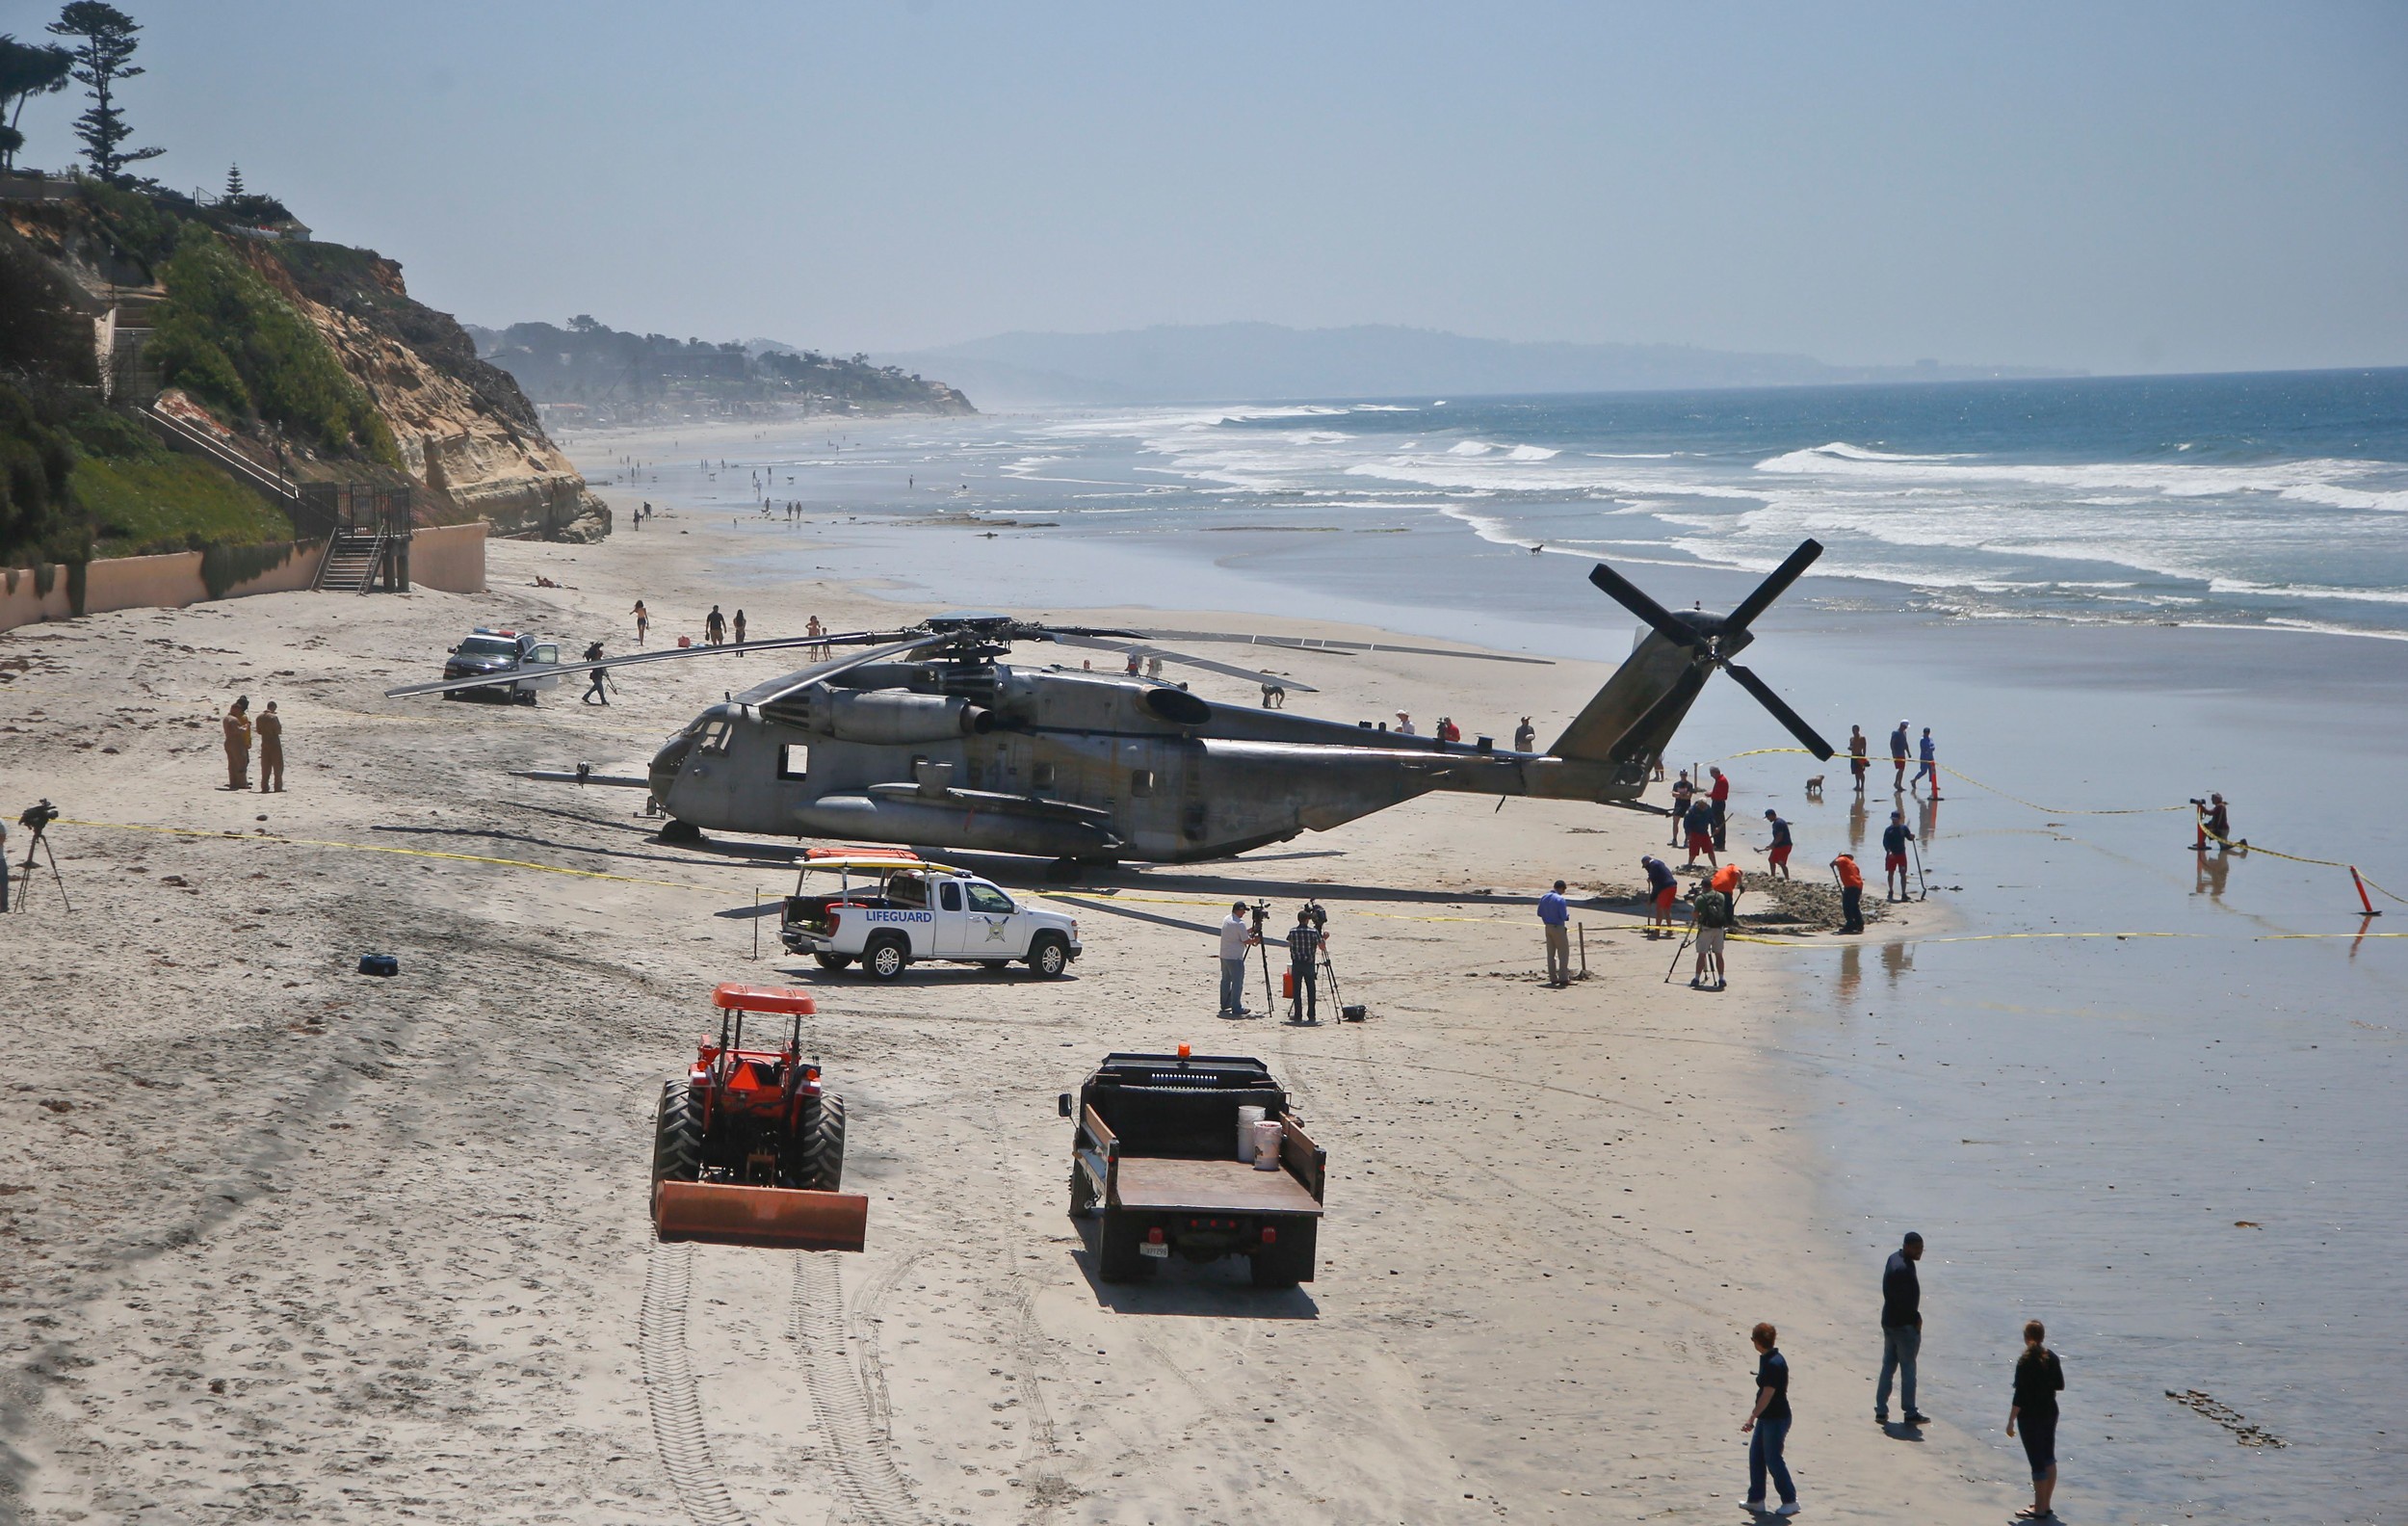 Вертолет над водохранилищем. Sikorsky Ch-53 Sea Stallion. Вертолет на пляже. Военные вертолеты на пляже. Вертолет над пляжем.